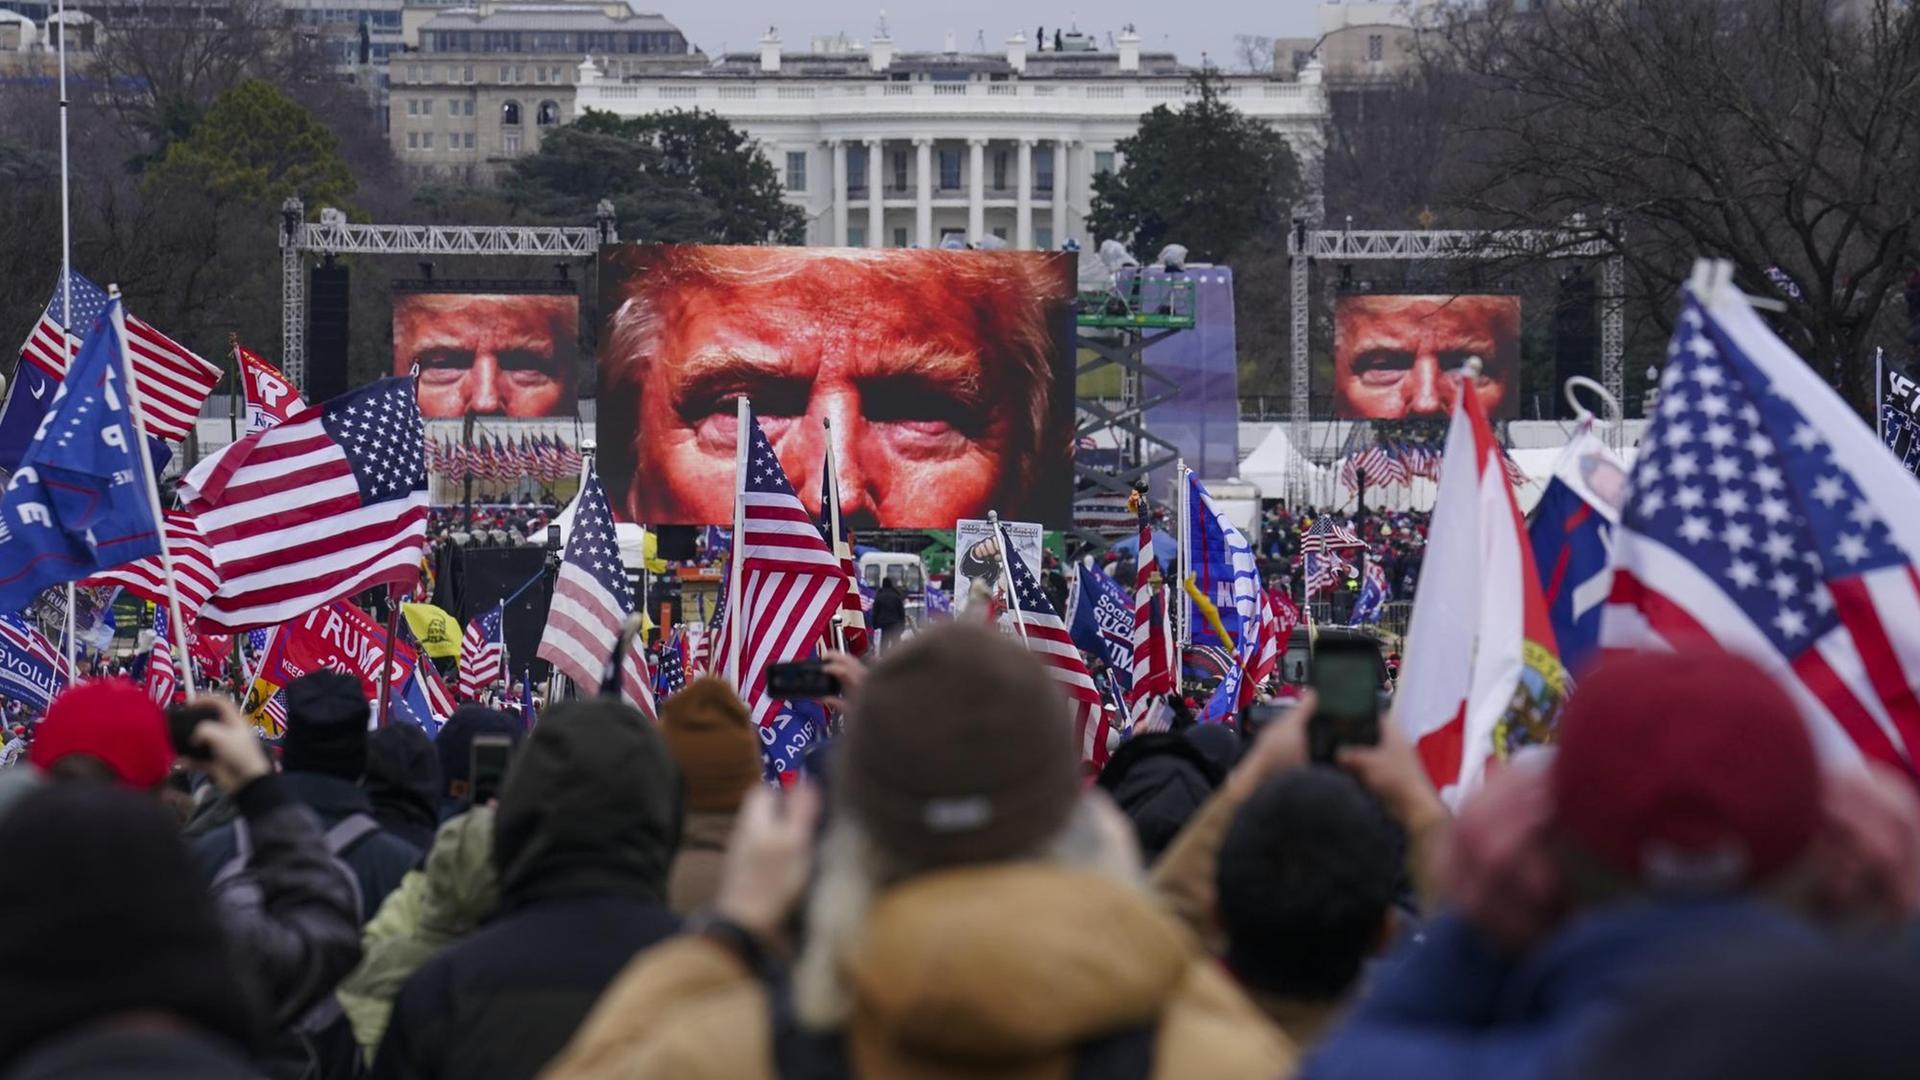 Auf dem Bild sind Demonstranten vor dem weißen Haus zu sehen. Vor ihnen stehen Bildschirme, die das Gesicht von Donald Trump zeigen.